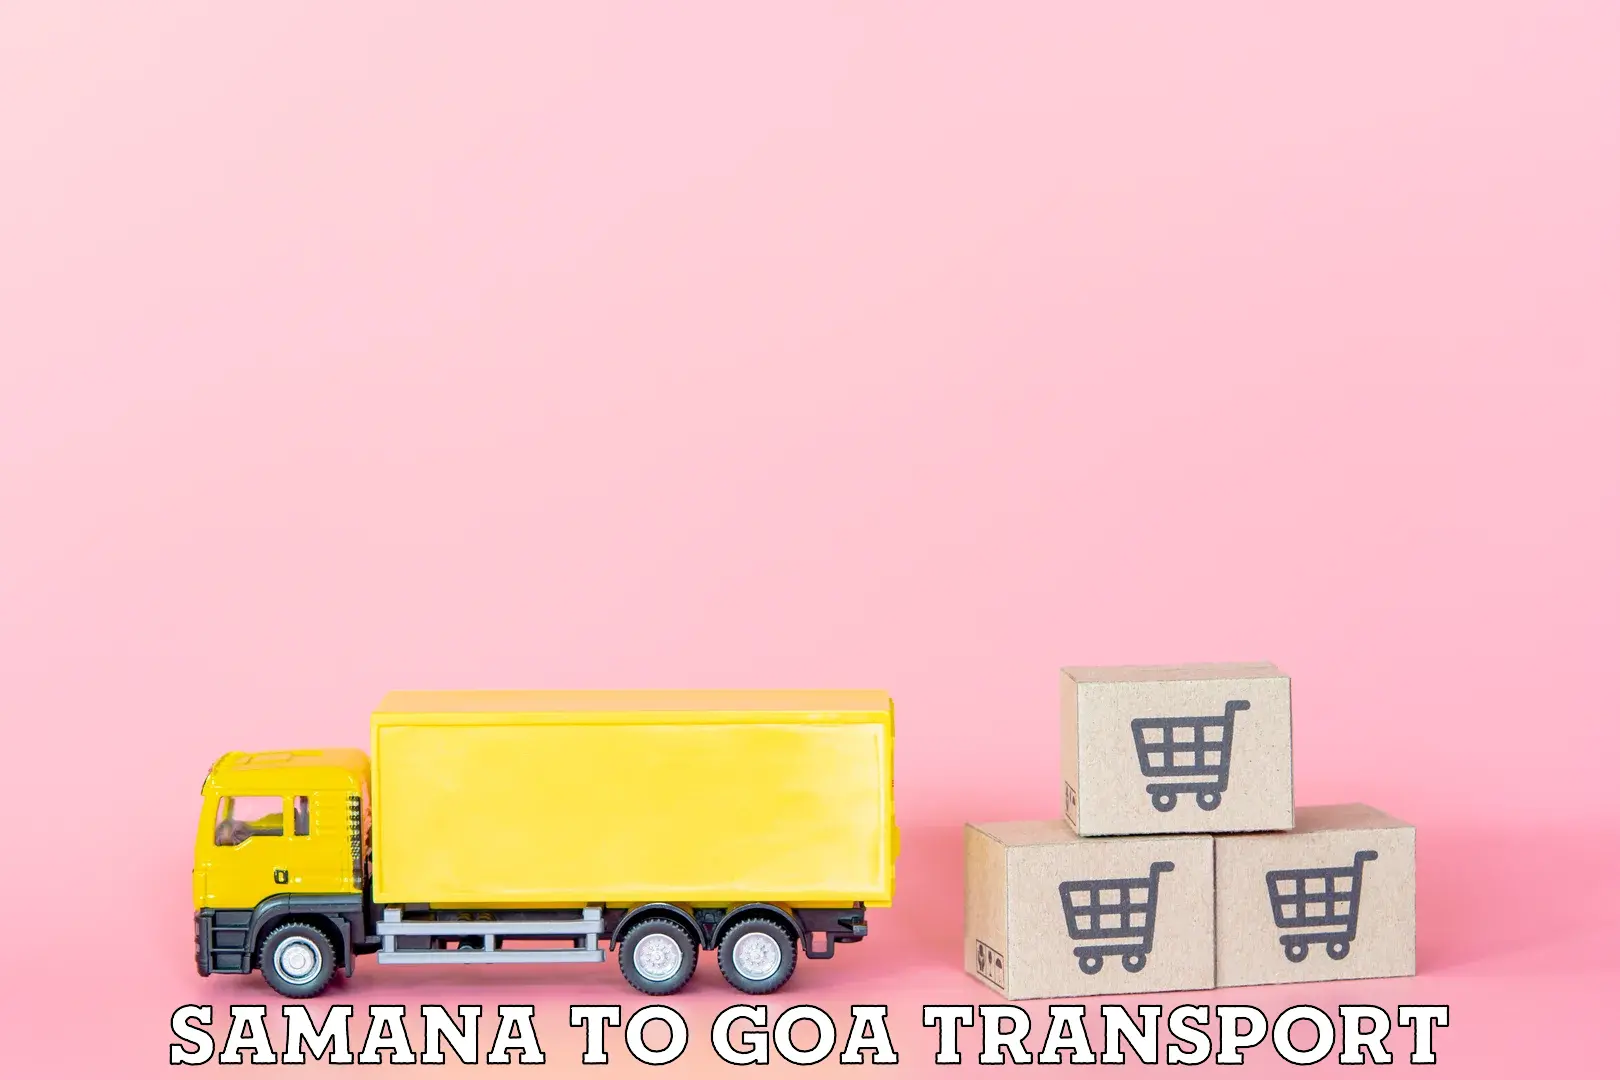 Transport in sharing in Samana to Canacona